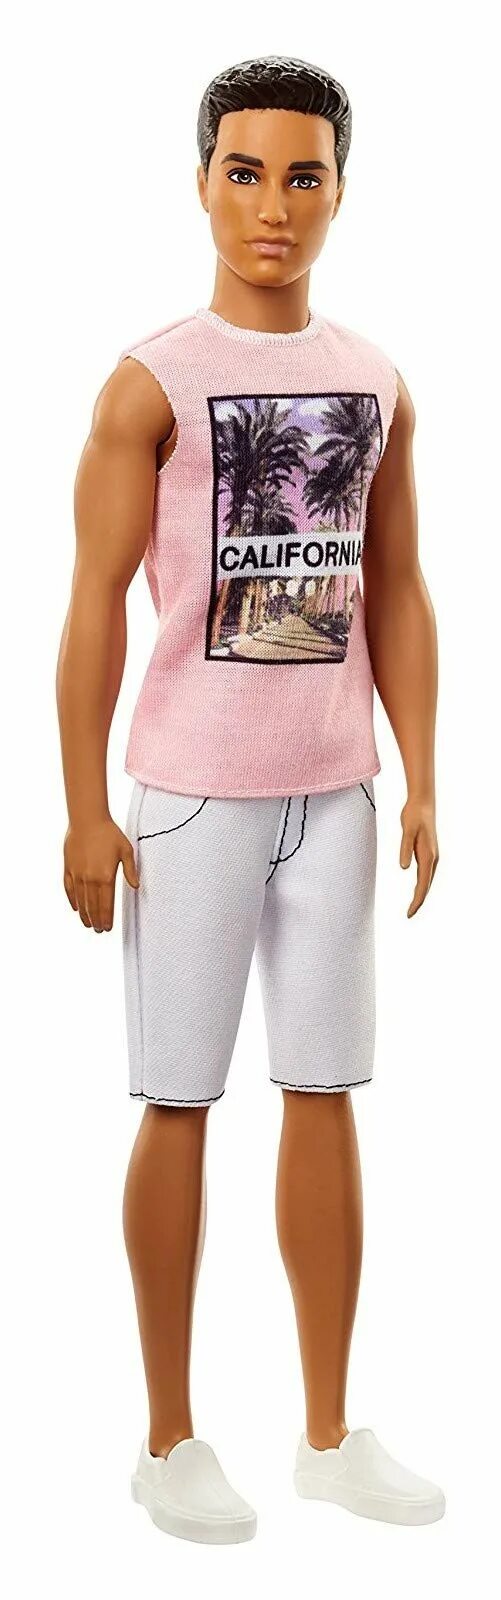 Кукла кен купить. Кукла Кен Fashionistas. Dwk44 игрушка Barbie Ken игра с модой в асс. Barbie Fashionistas Кен. Кукла Кен Маттел Mattel Barbie Ryan Fashionistas.